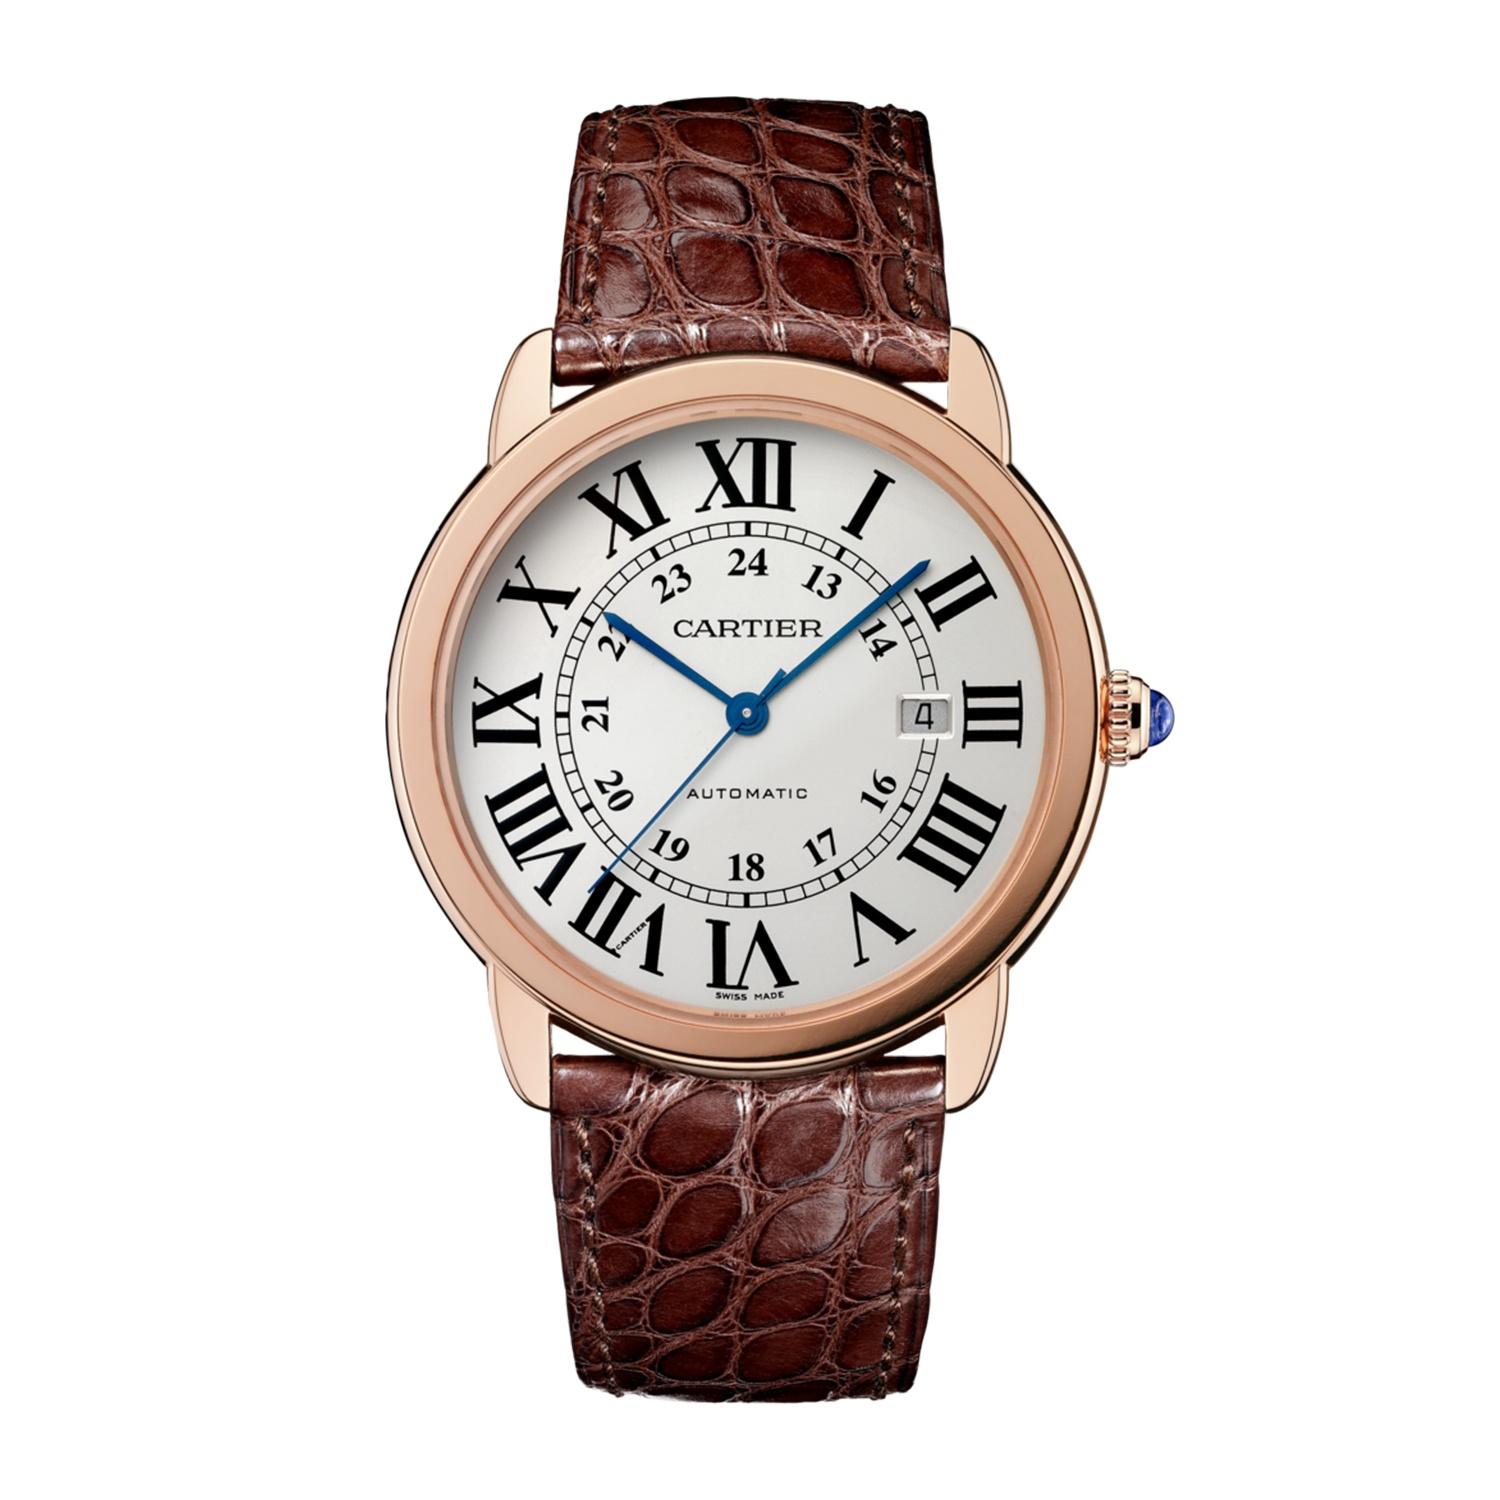 Ronde Solo De Cartier Watch